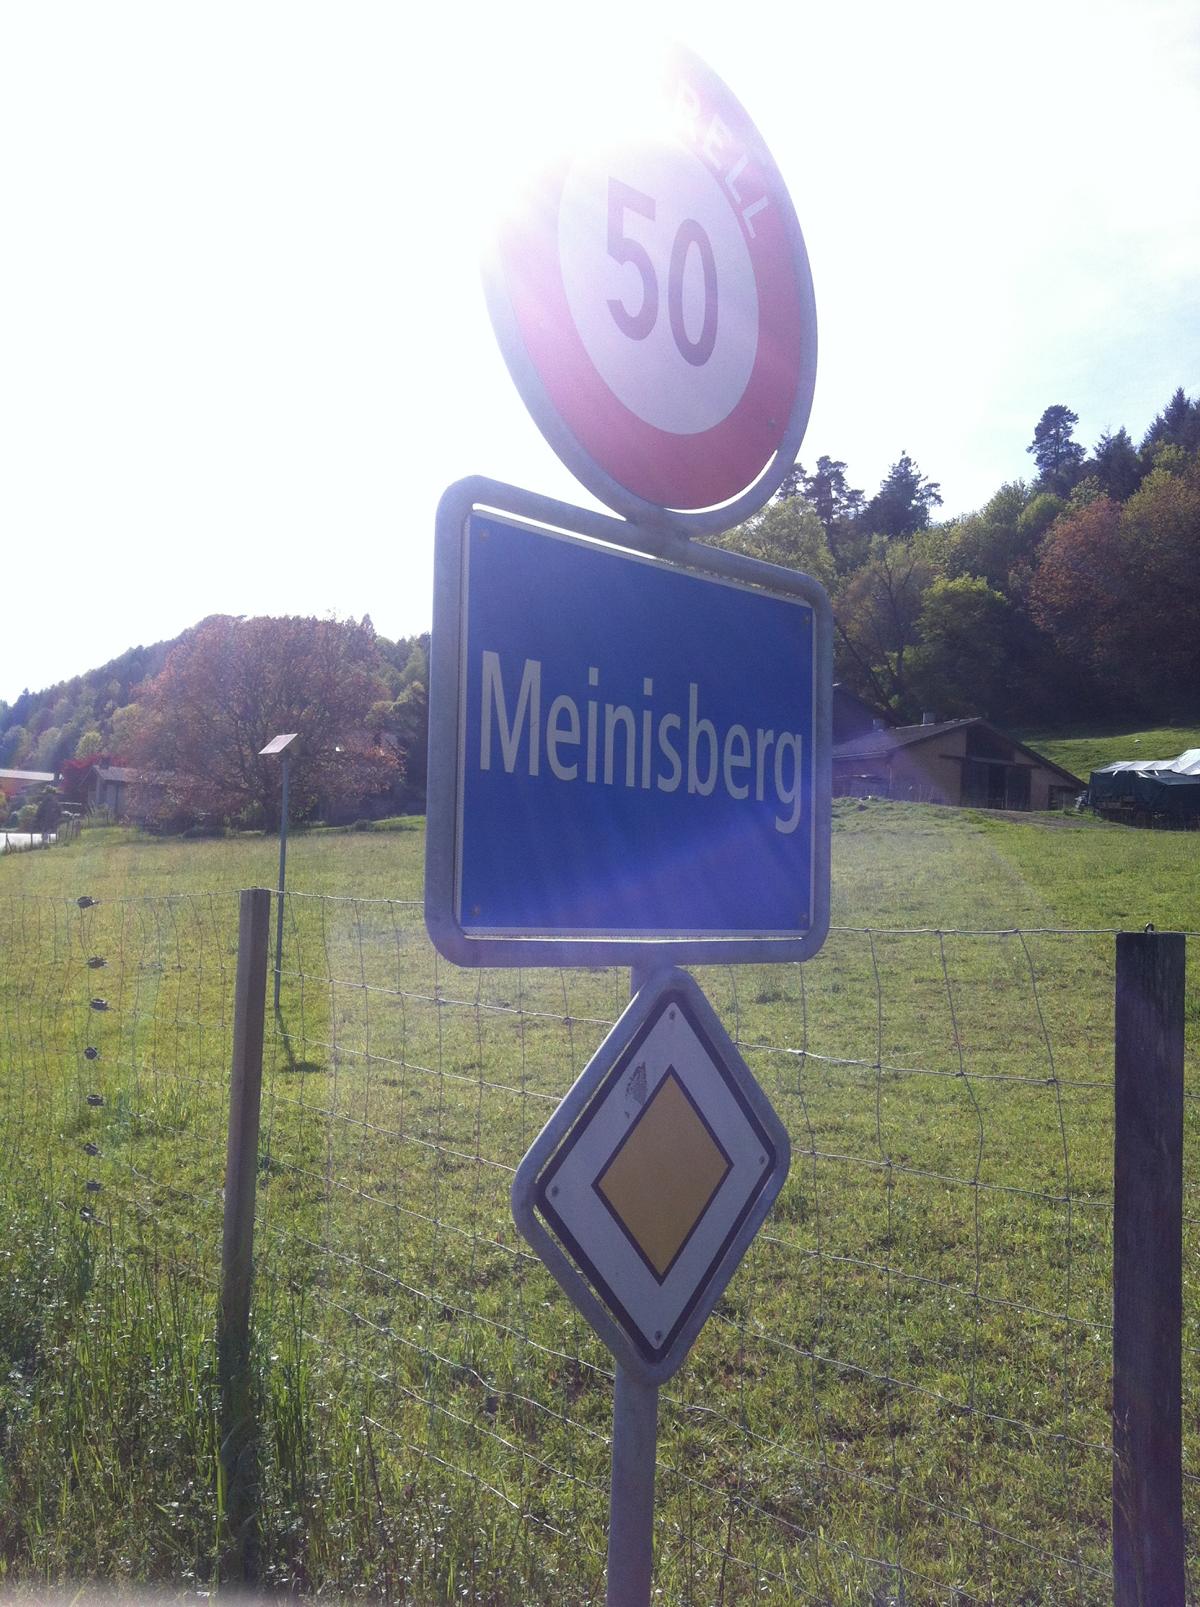 Meinisberg